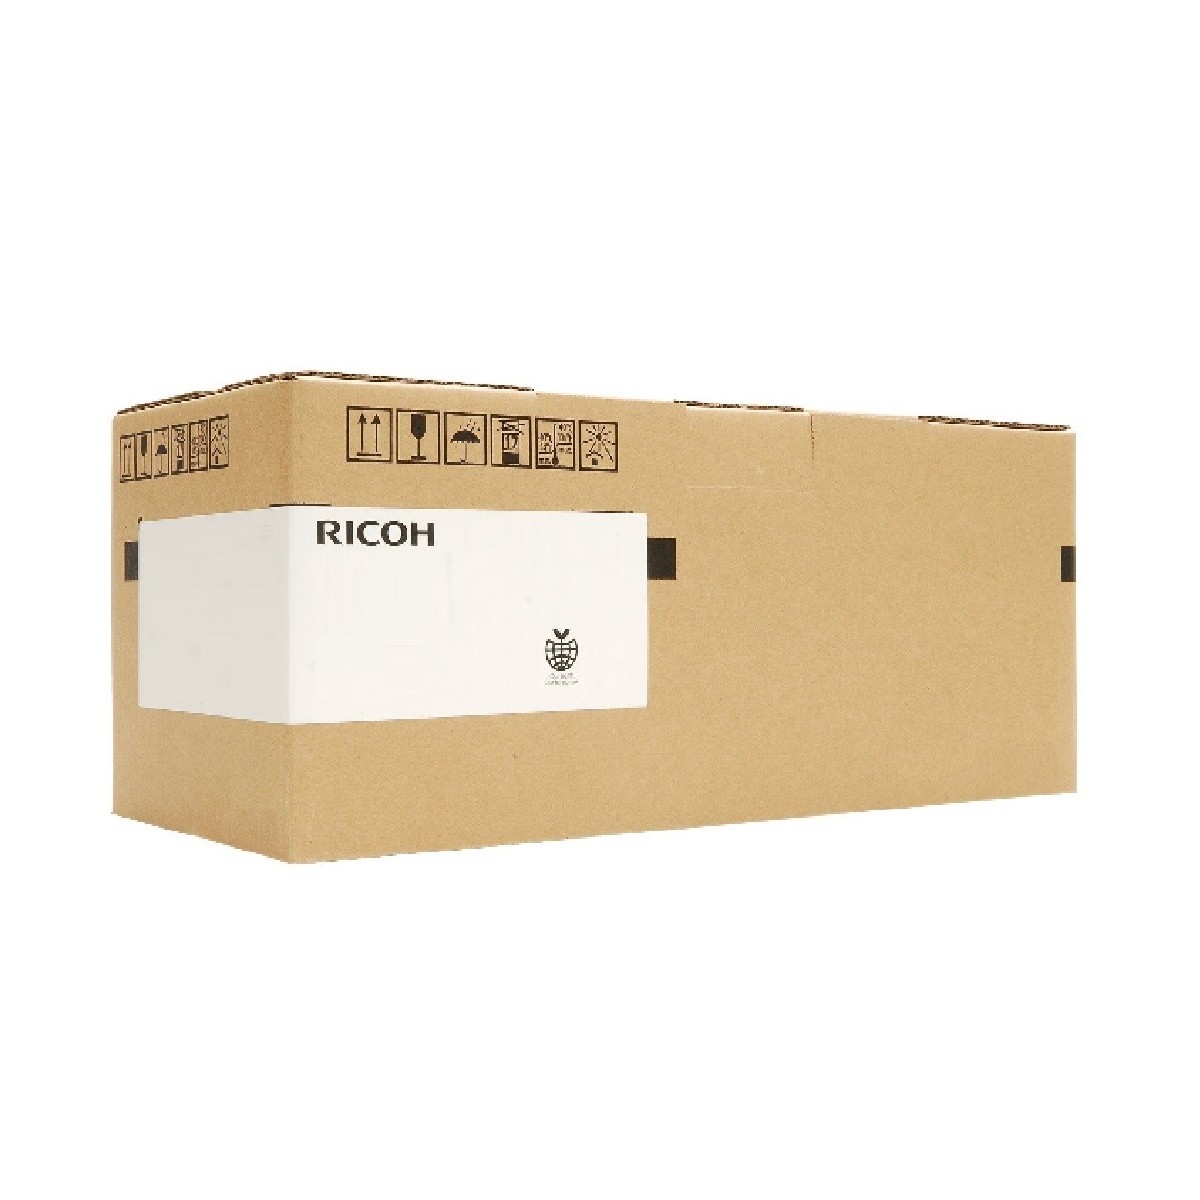 Ricoh Type 320 - Drum Cartridge 60,000 sheet